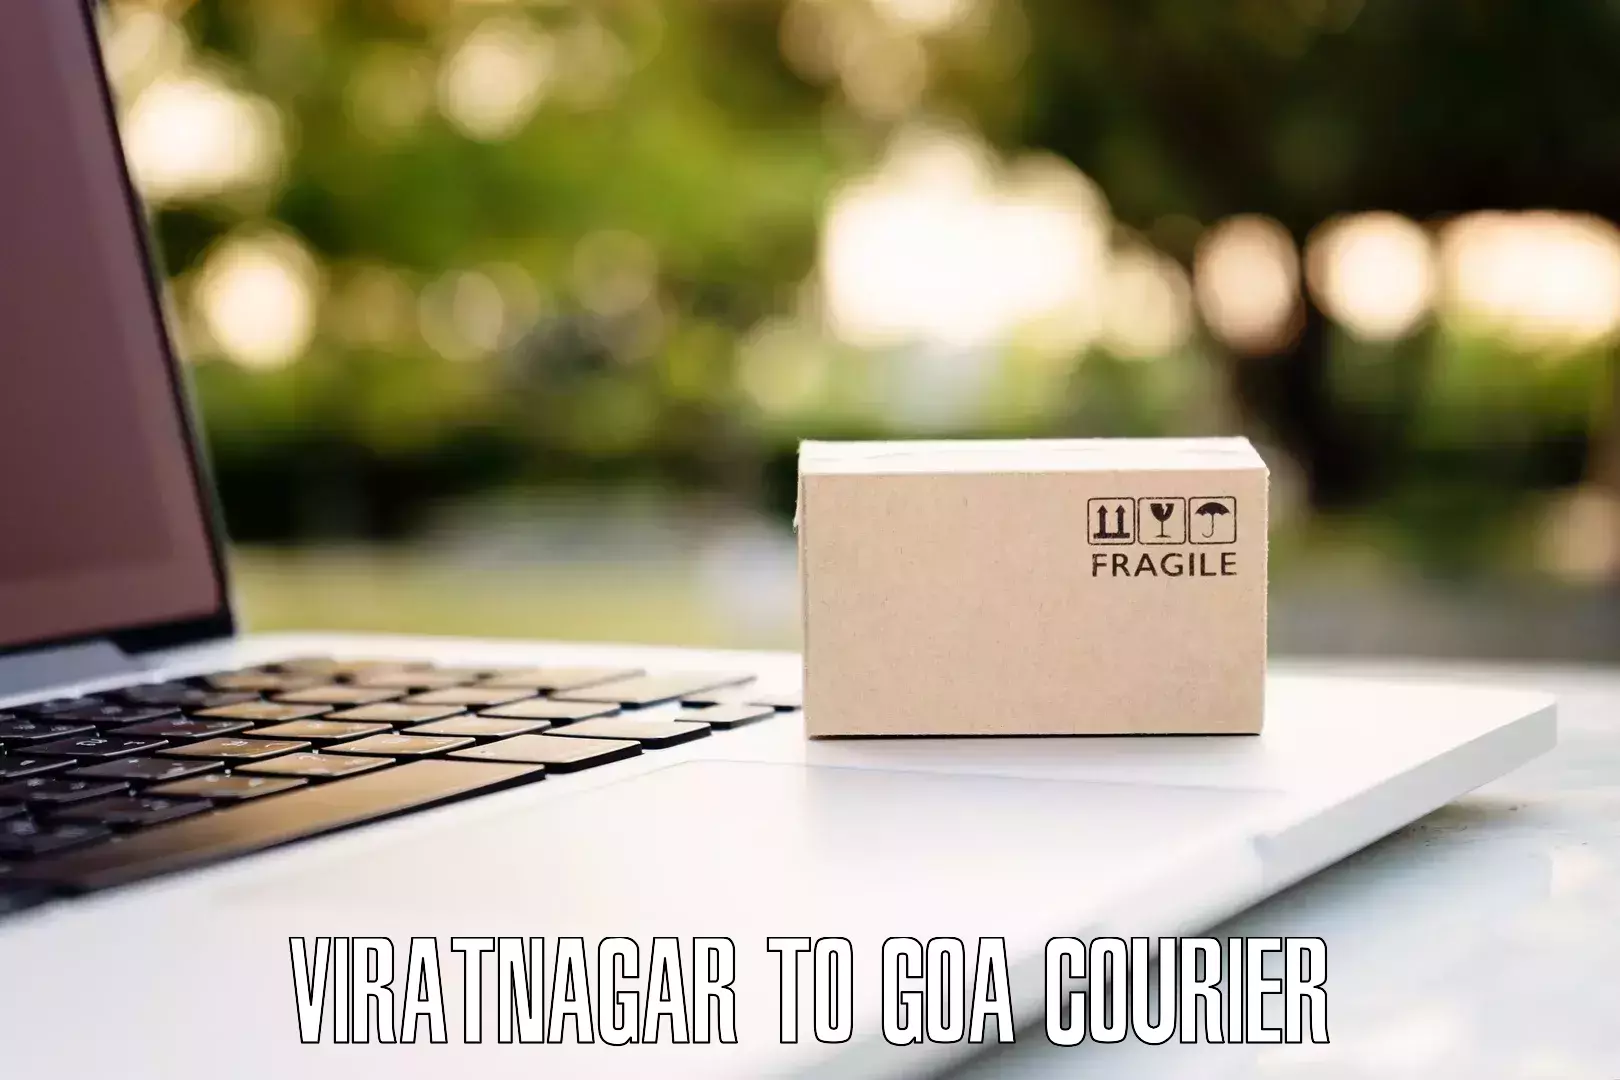 Round trip baggage courier in Viratnagar to IIT Goa